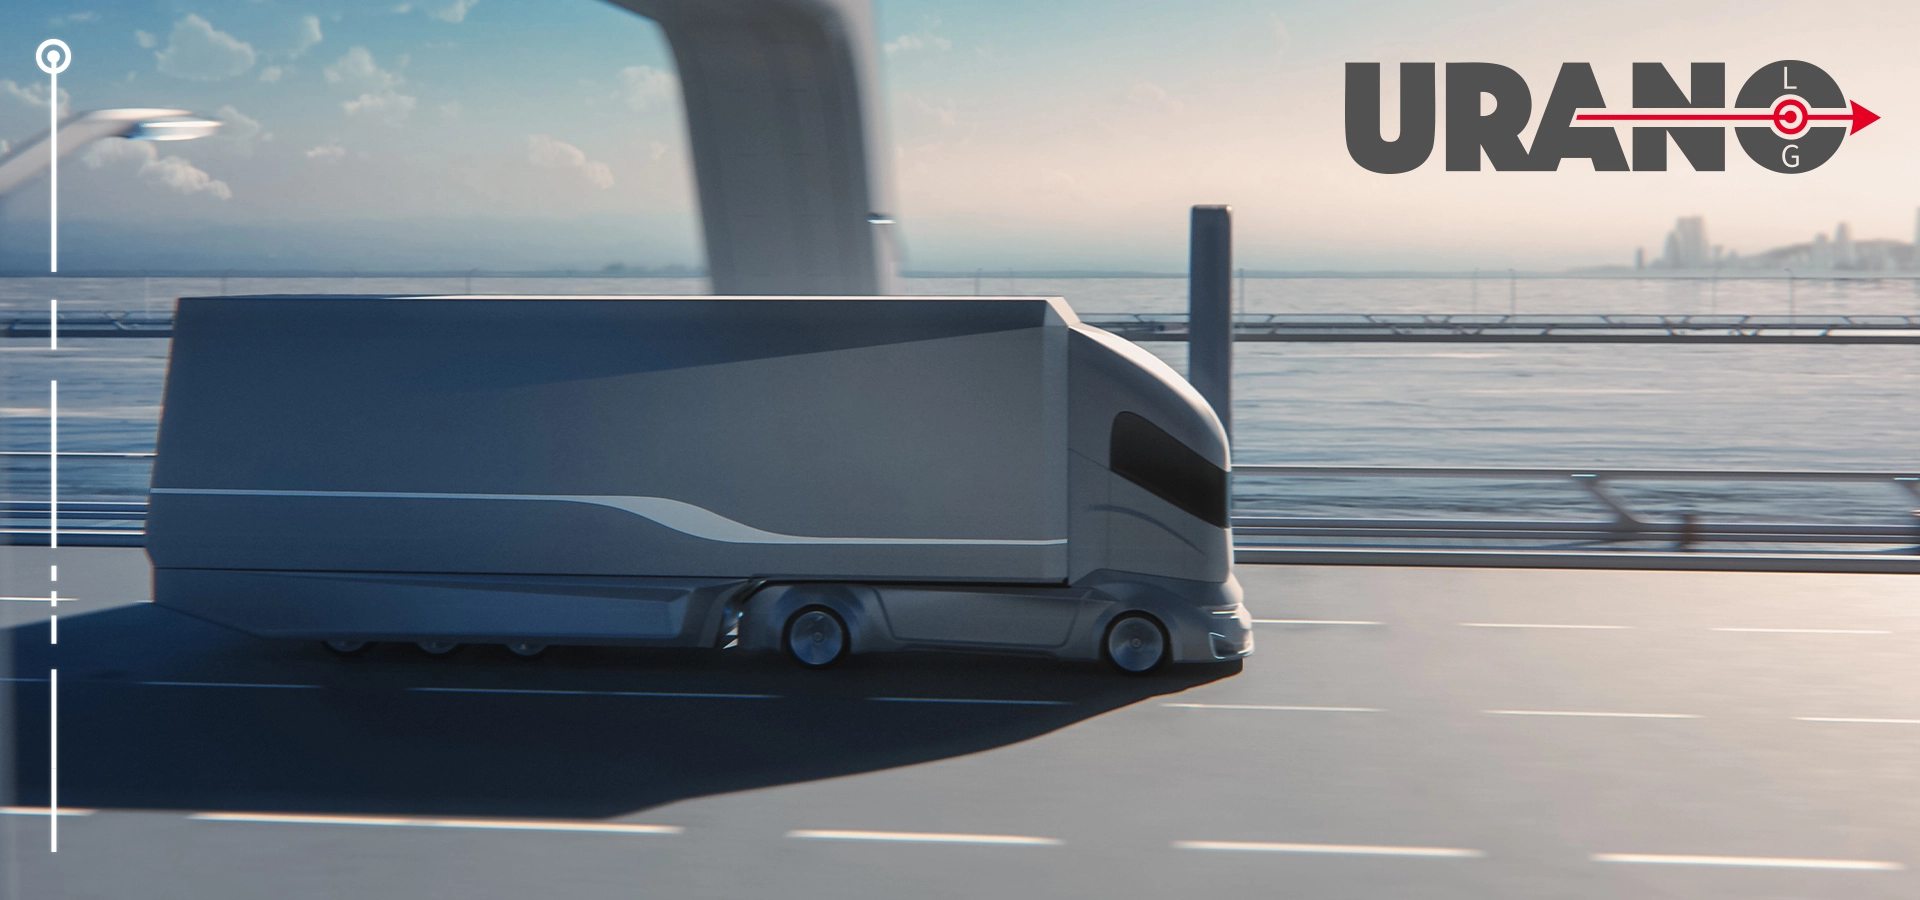 Urano Log, Transporte de Cargas Fracionadas - Qual é o futuro do transporte rodoviário de cargas no Brasil?